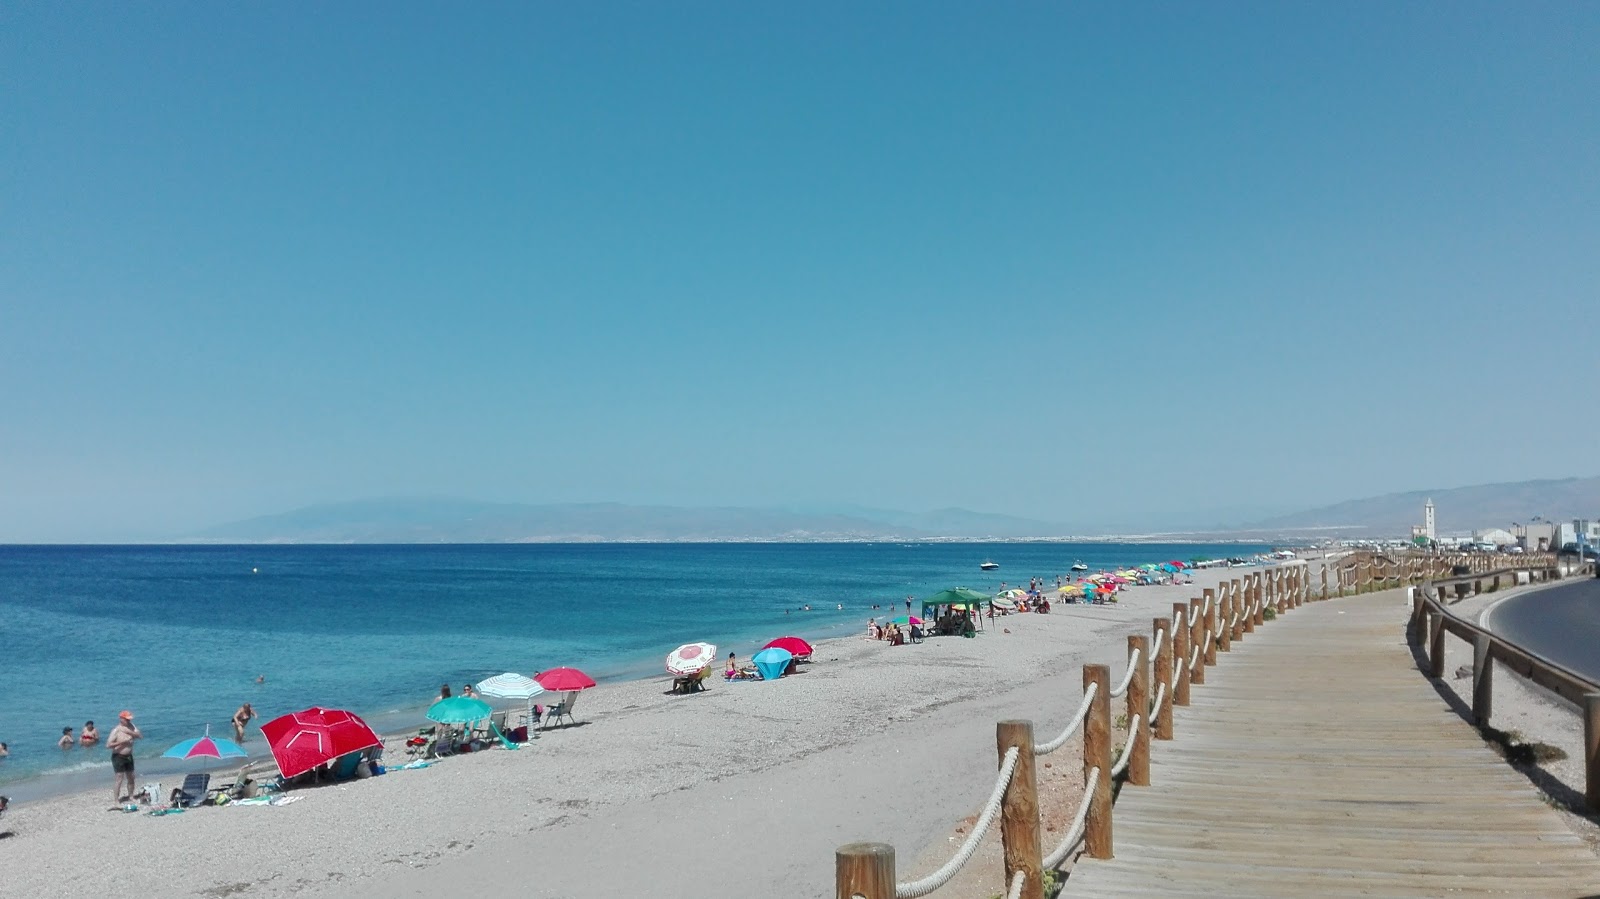 Playa de Almadraba'in fotoğrafı parlak kabuk kumu yüzey ile